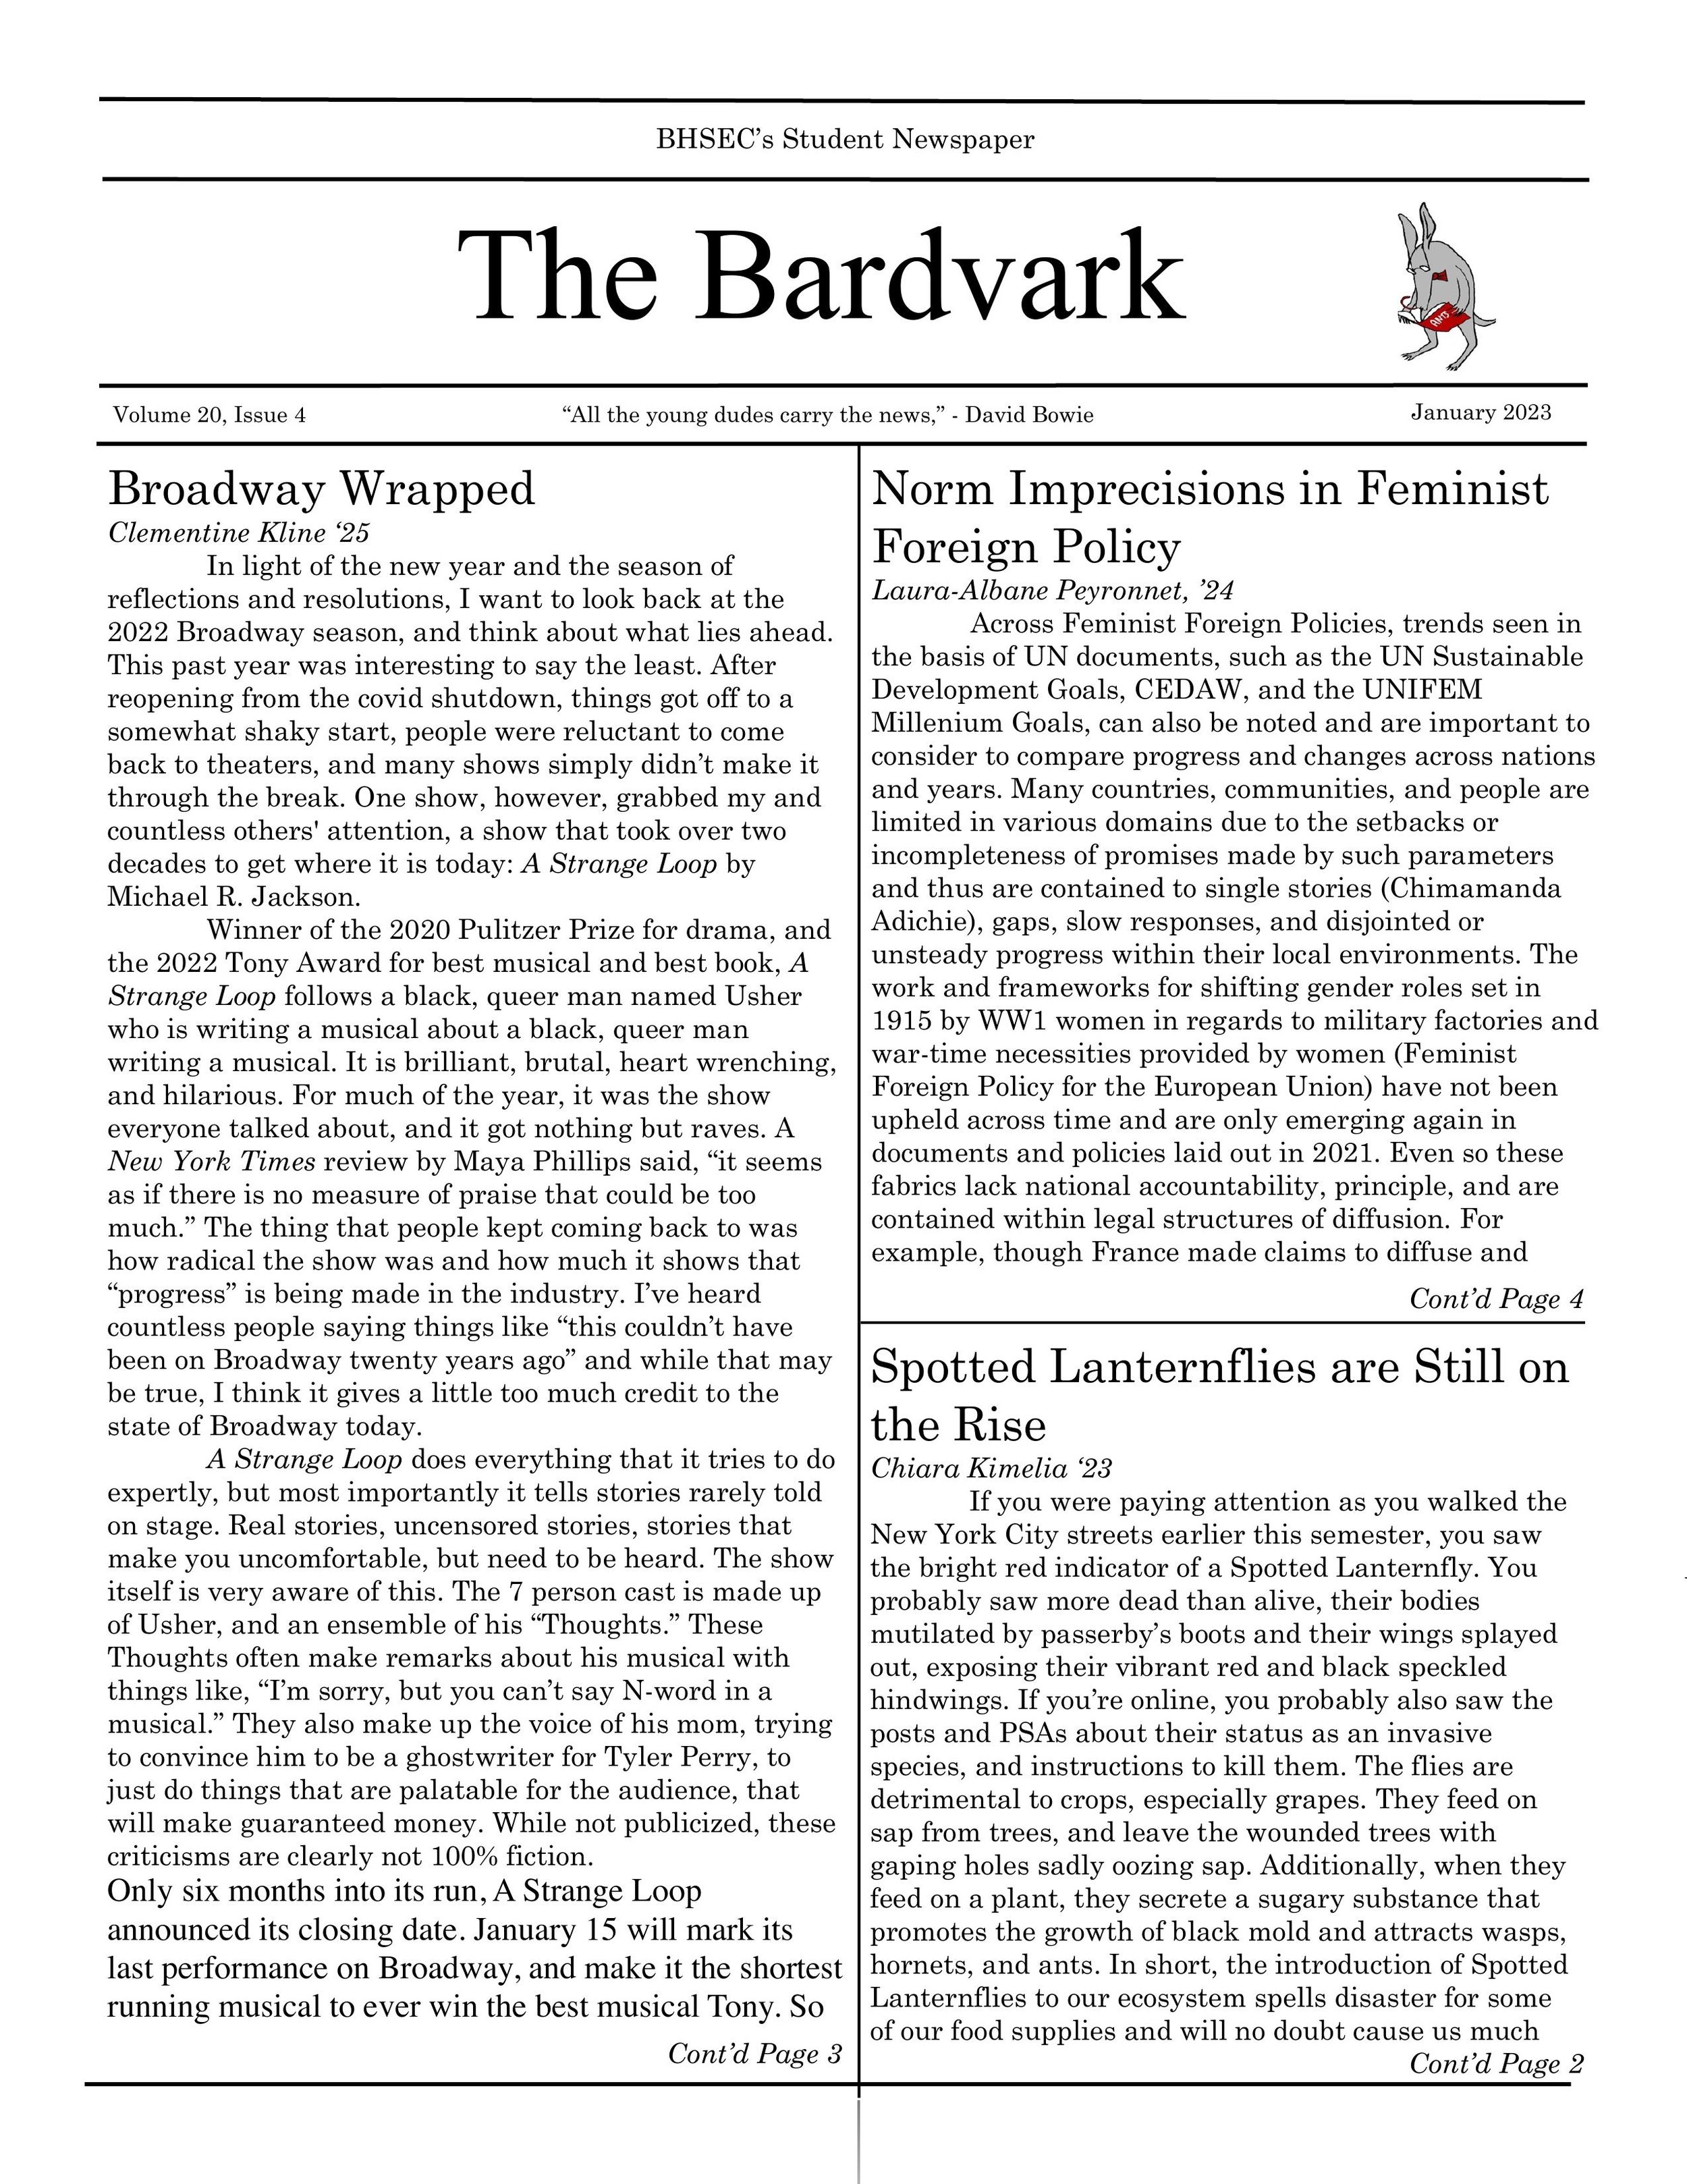 Bardvark January 2023 Issue-1.jpg